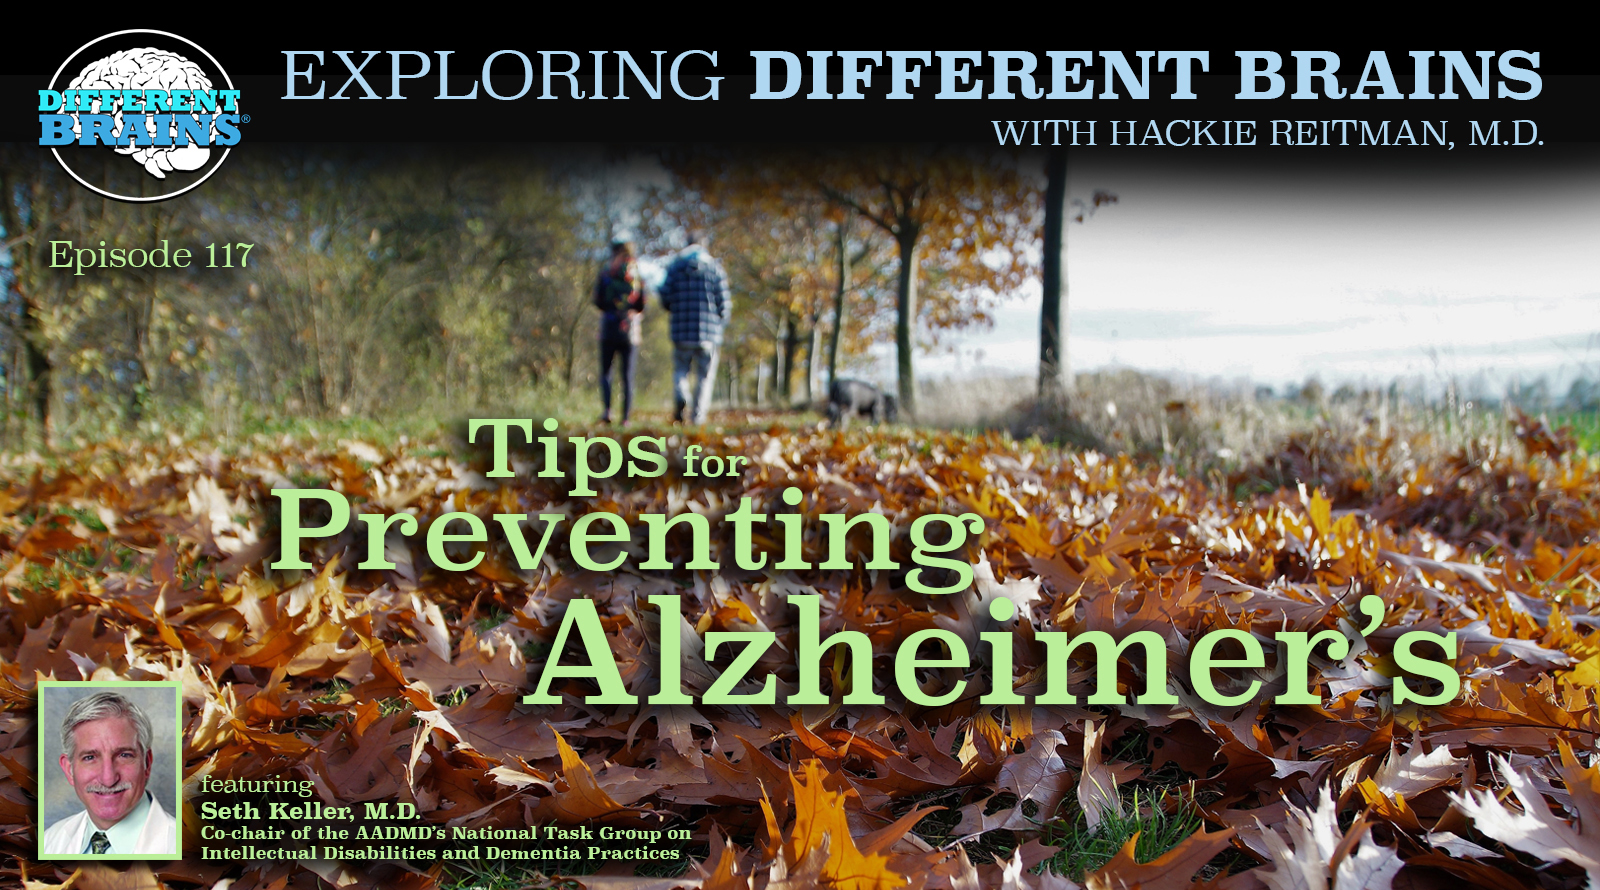 Tips For Preventing Alzheimer’s, With Seth Keller, M.D. Of The AADMD | EDB 117